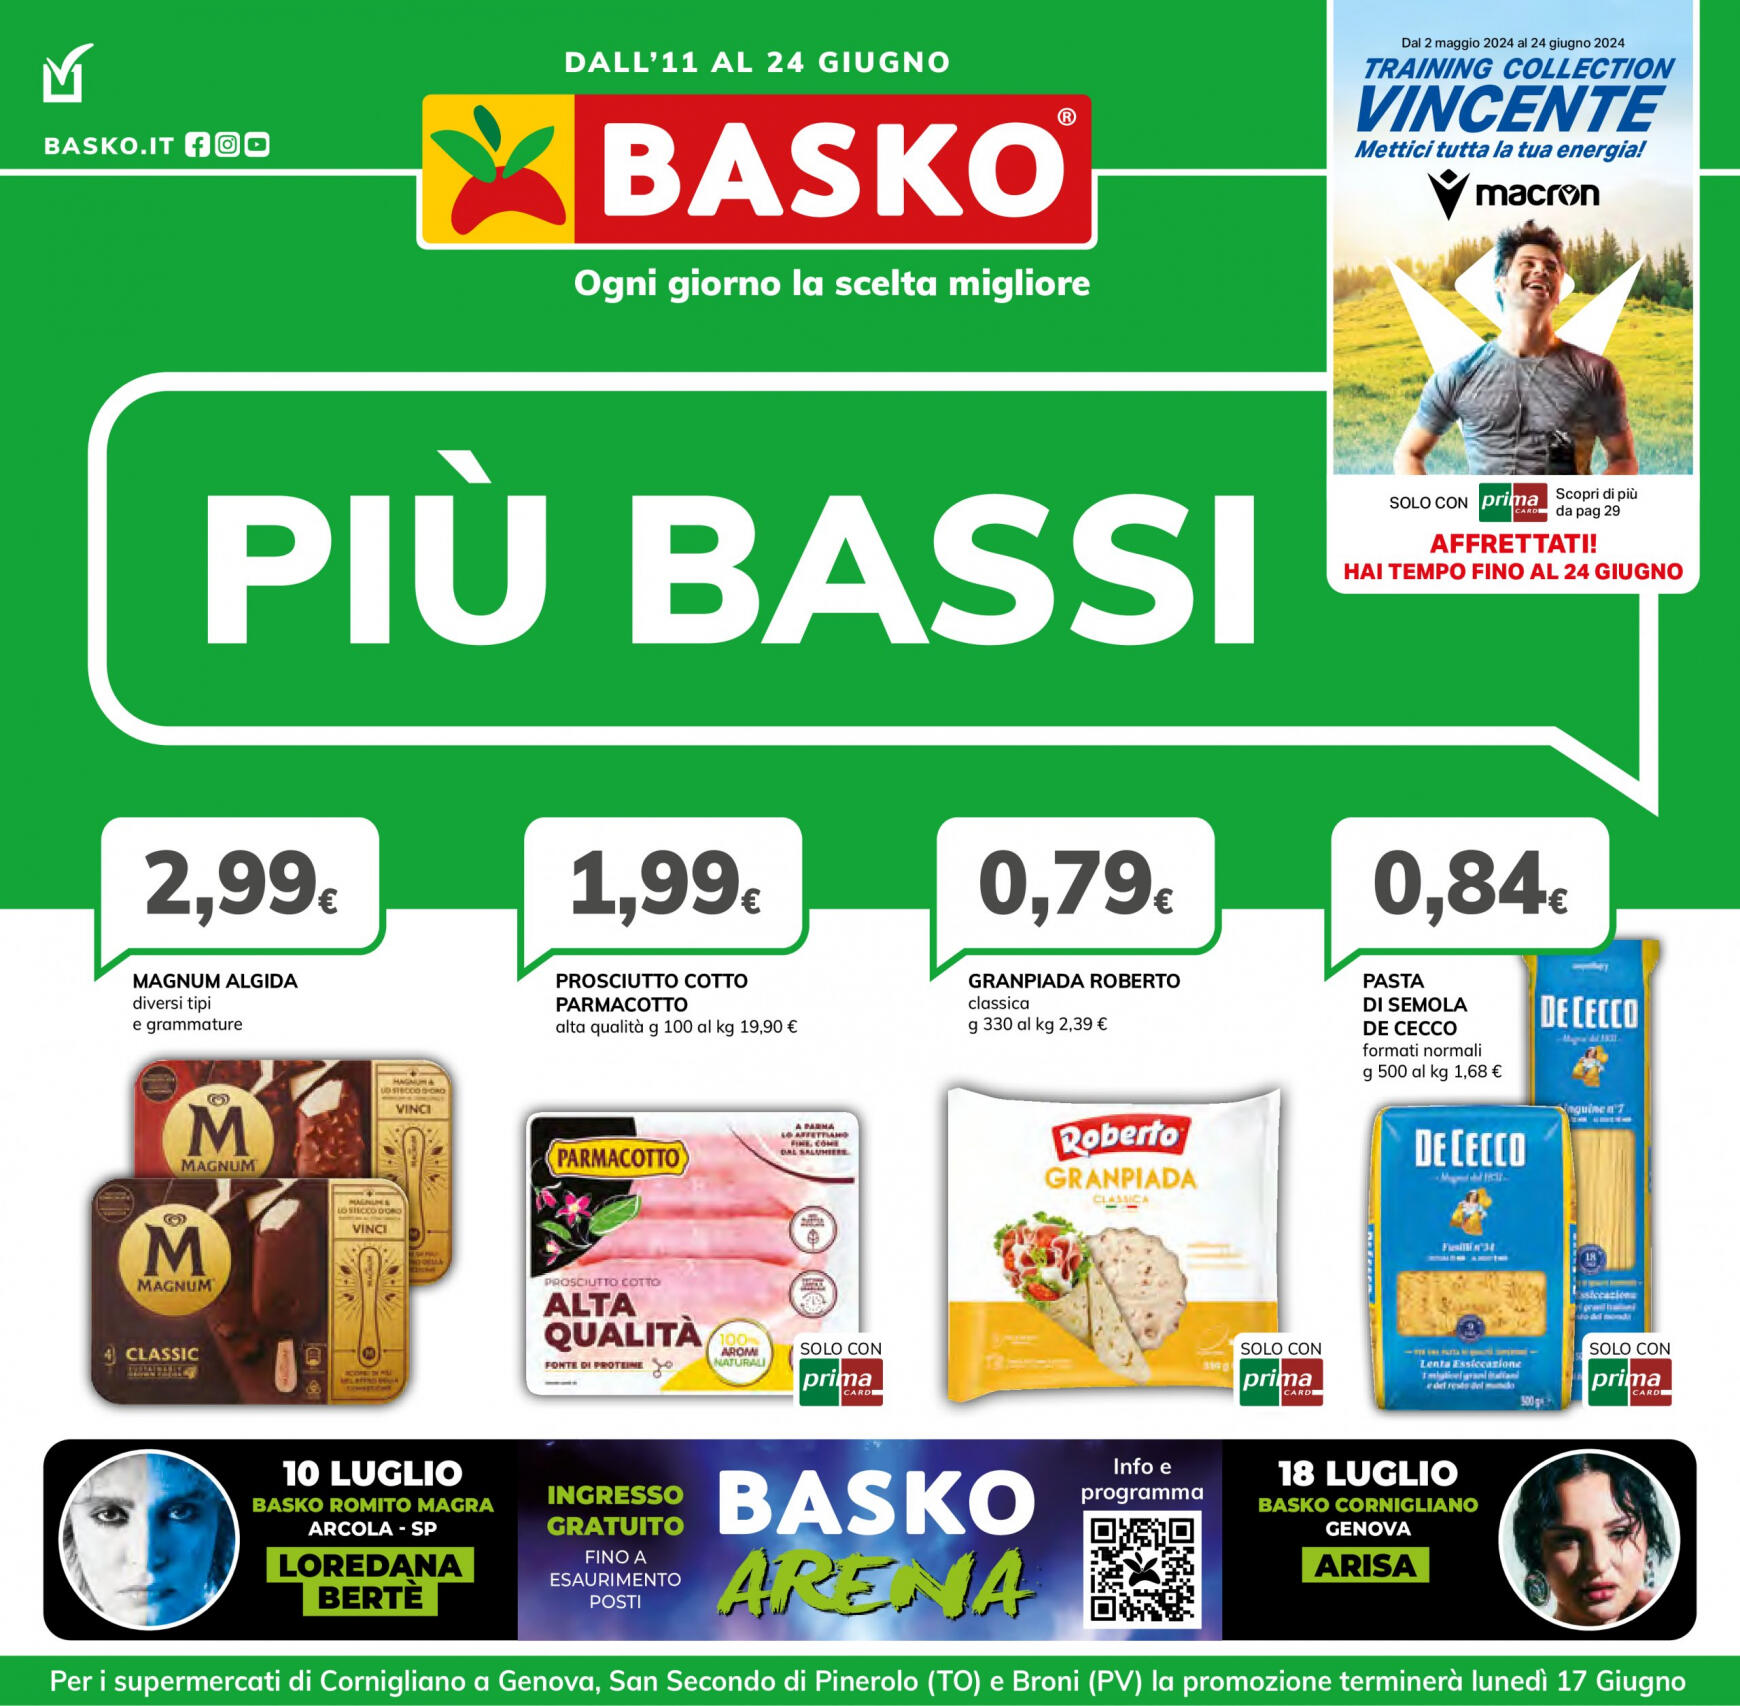 basko - Nuovo volantino Basko - Più Bassi 11.06. - 24.06. - page: 1